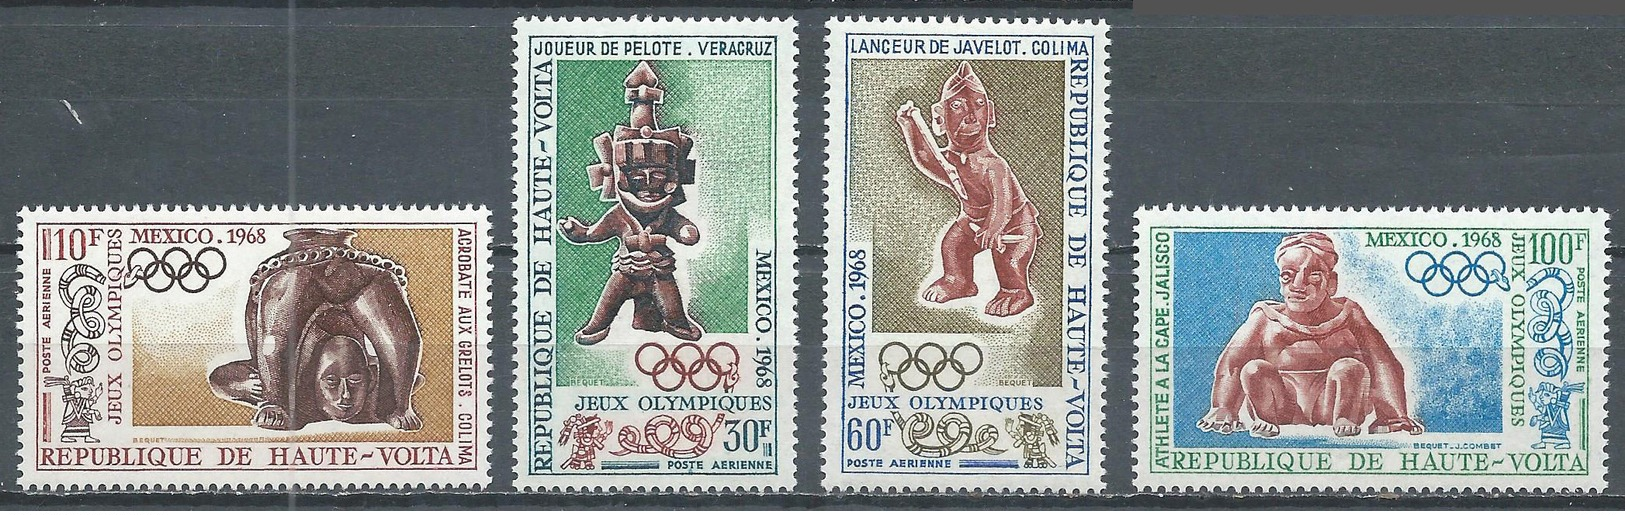 Haute-Volta Poste Aérienne YT N°54/57 Jeux Olympiques De Mexico 1968 Neuf ** - Haute-Volta (1958-1984)